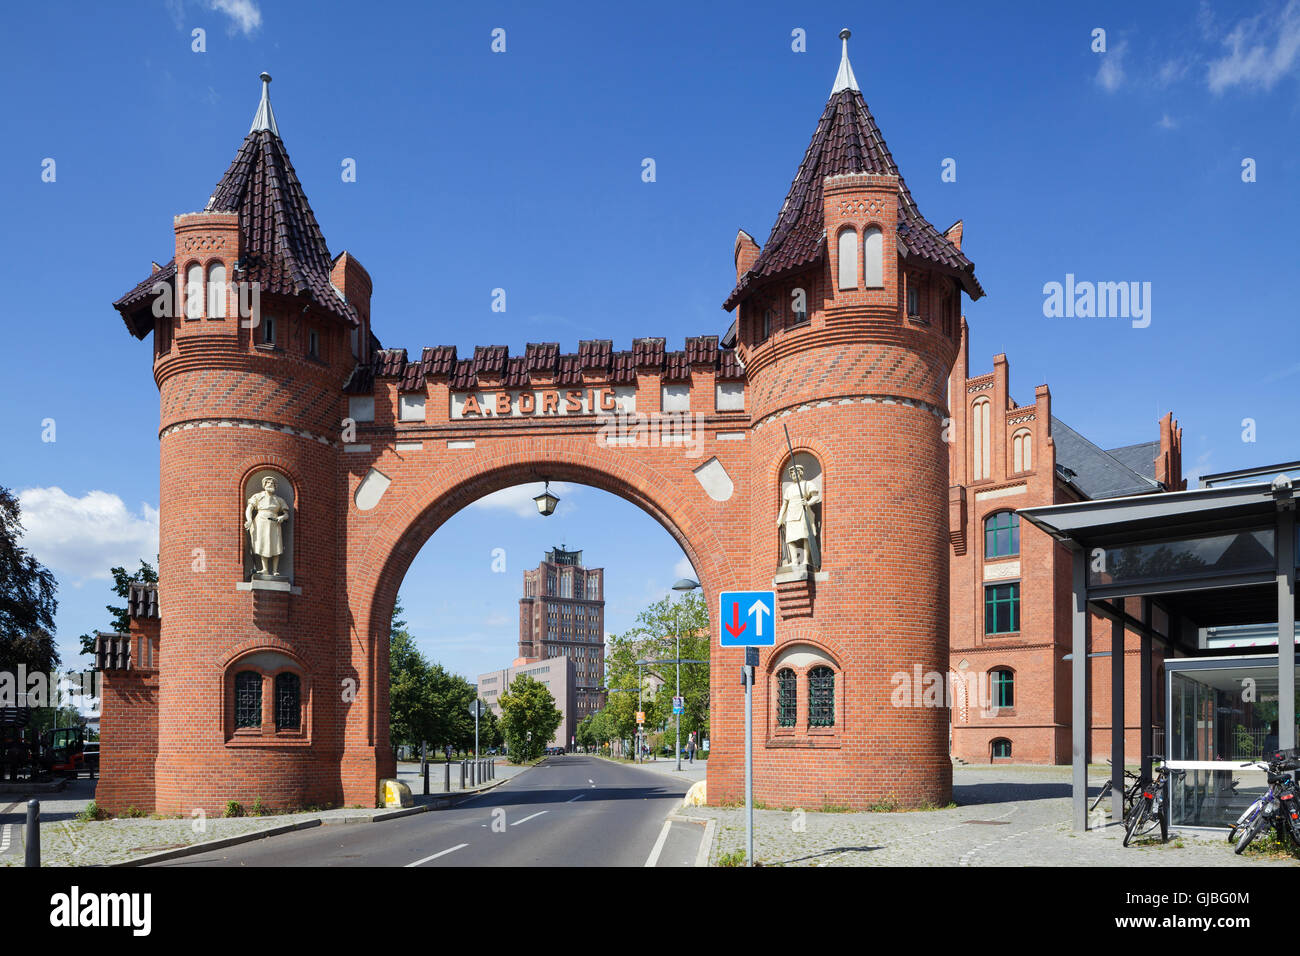 Avec la porte de Borsig Borsig Tower vu à travers l'arche, Tegel, Berlin, Allemagne Banque D'Images